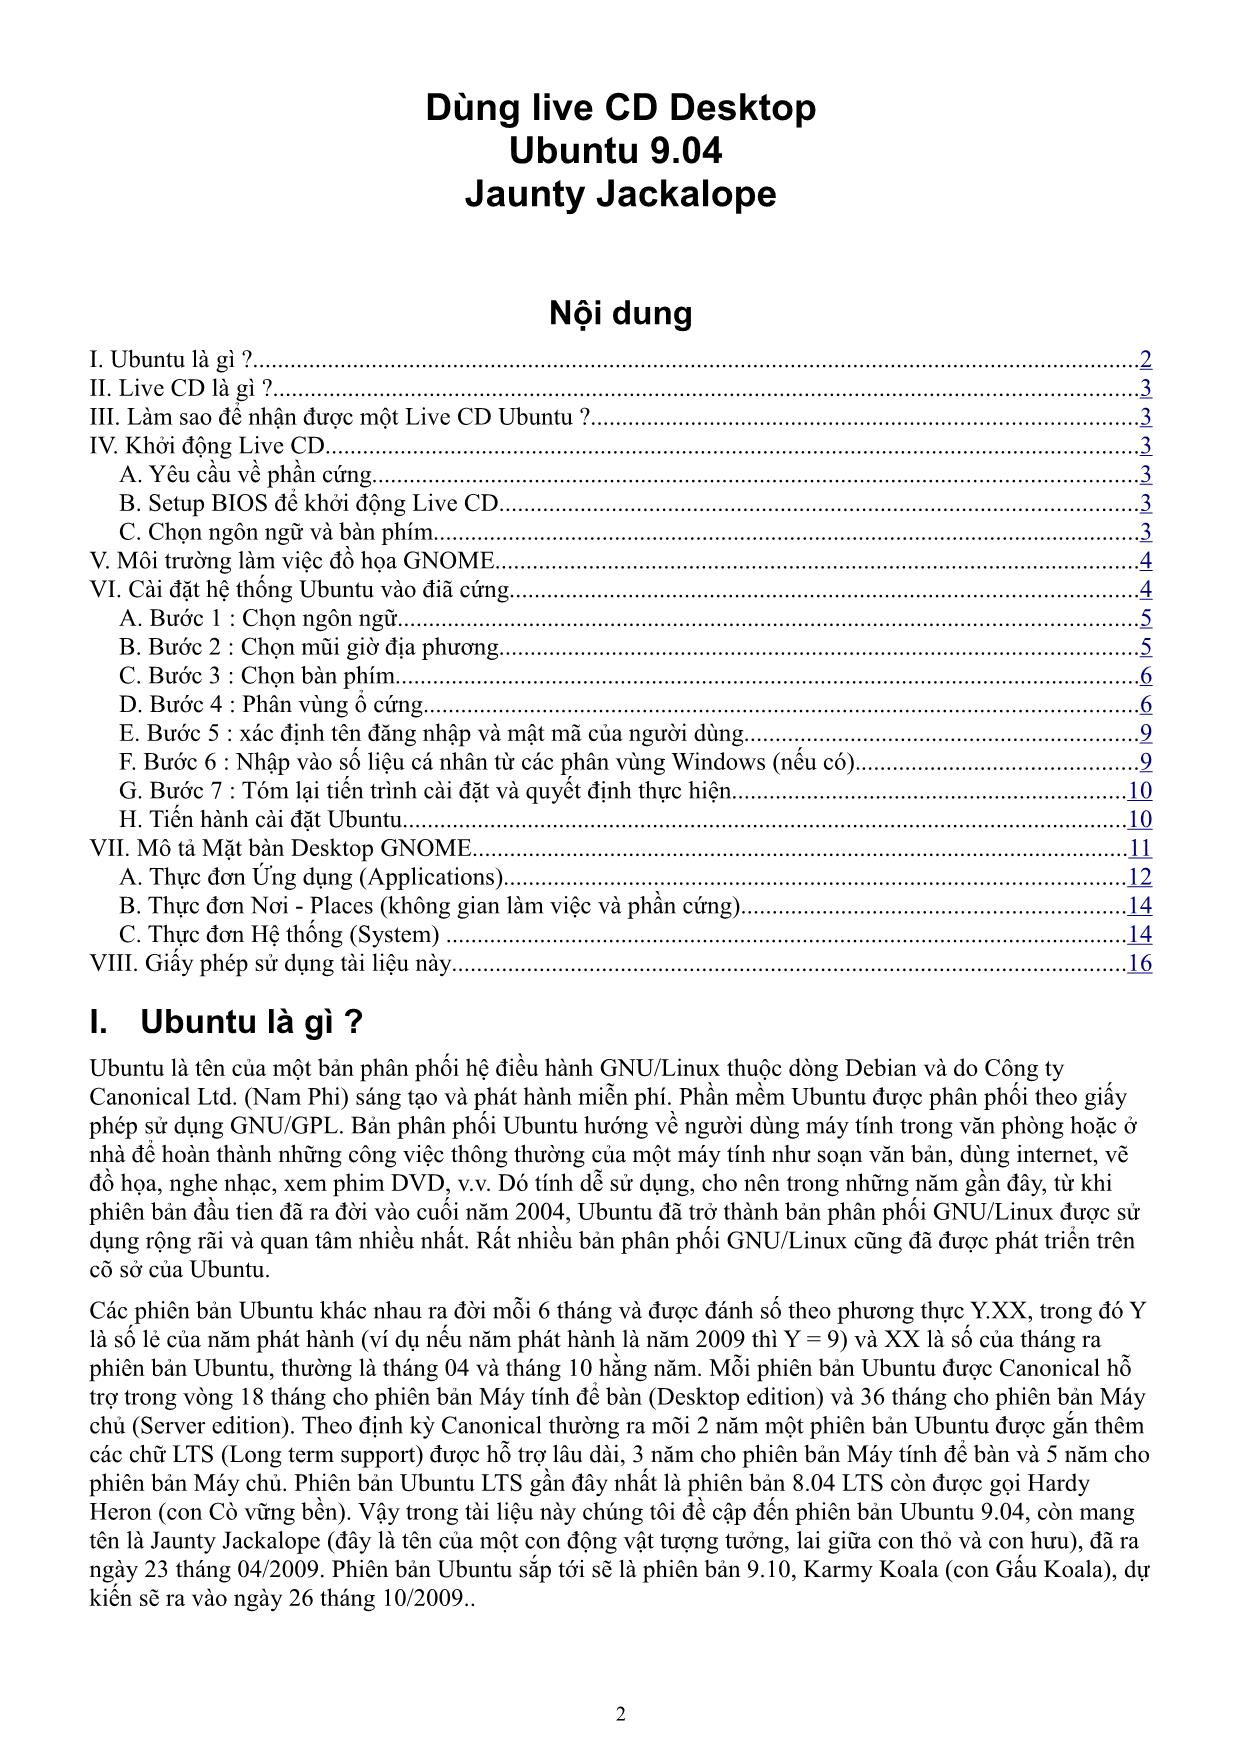 Tài liệu hướng dẫn sử dụng Ubuntu bằng tiếng Việt trang 2